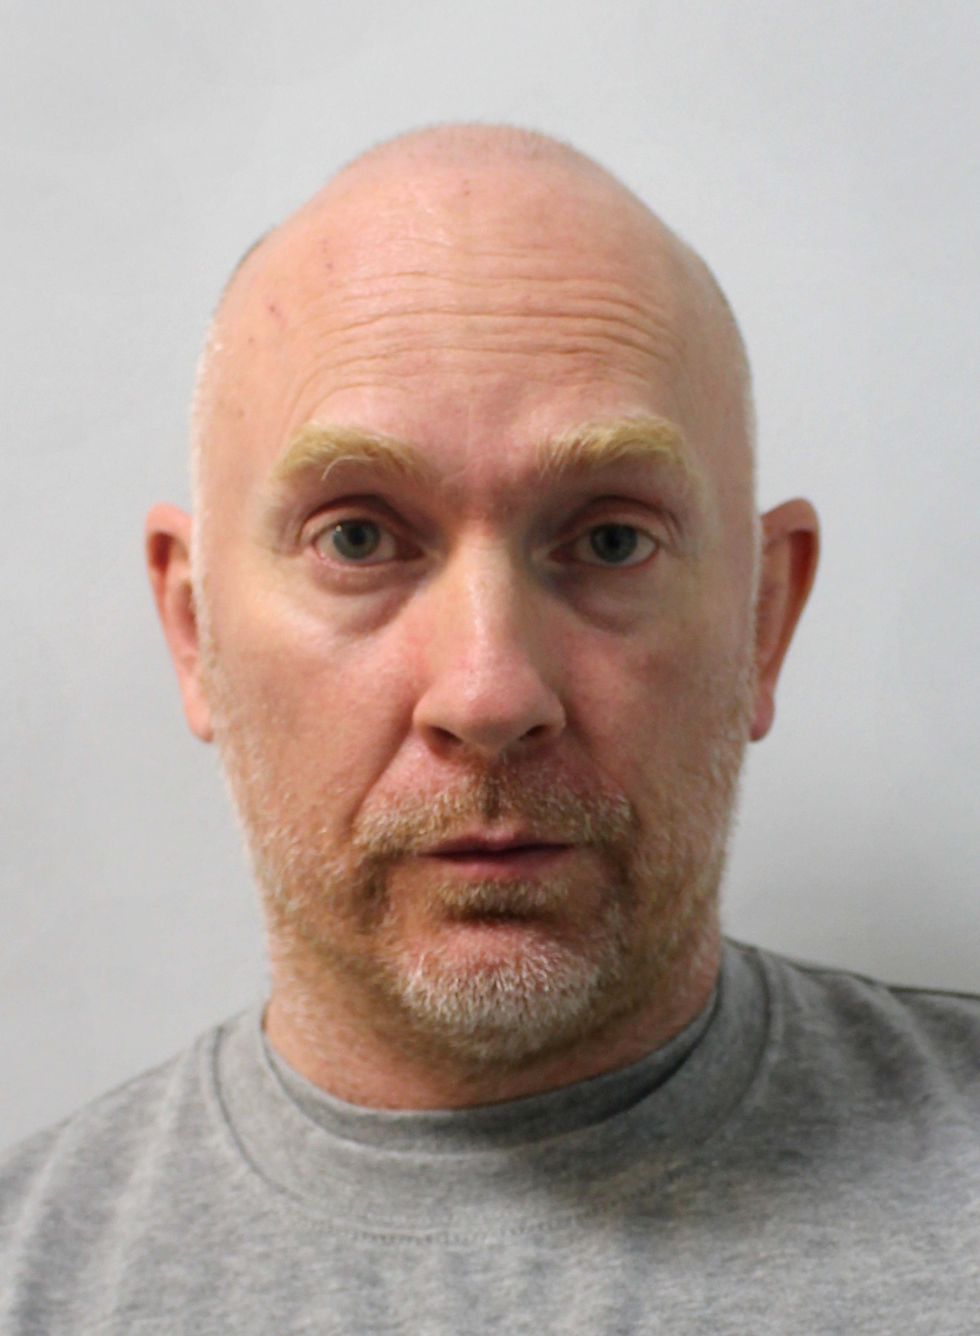 Former Metropolitan Police officer Wayne Couzens, 48.